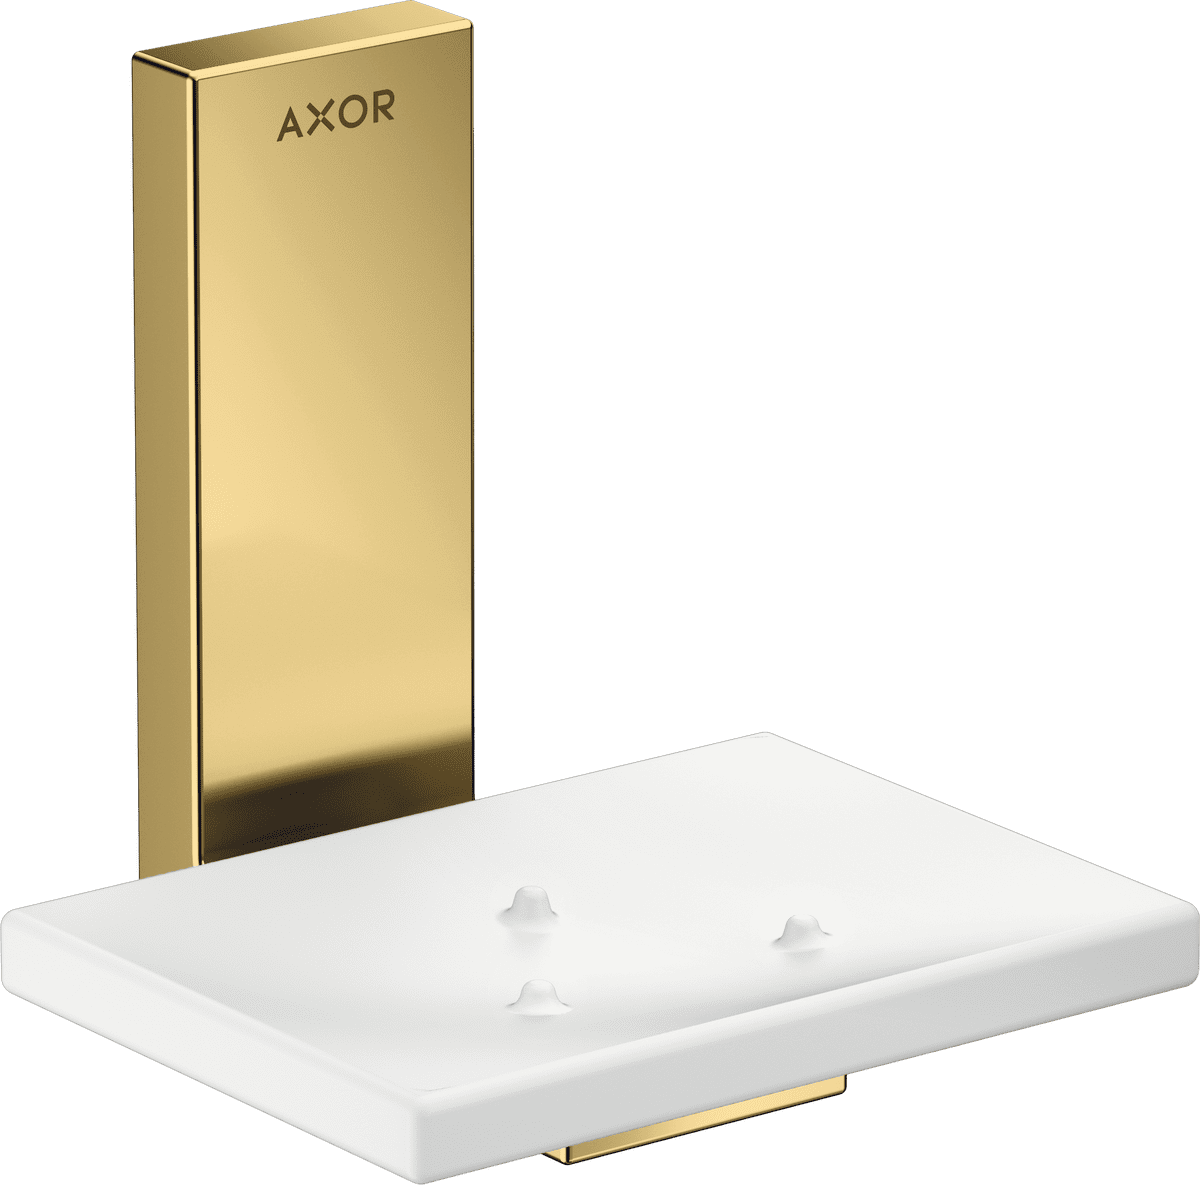 εικόνα του HANSGROHE AXOR Universal Rectangular Soap dish #42605990 - Polished Gold Optic